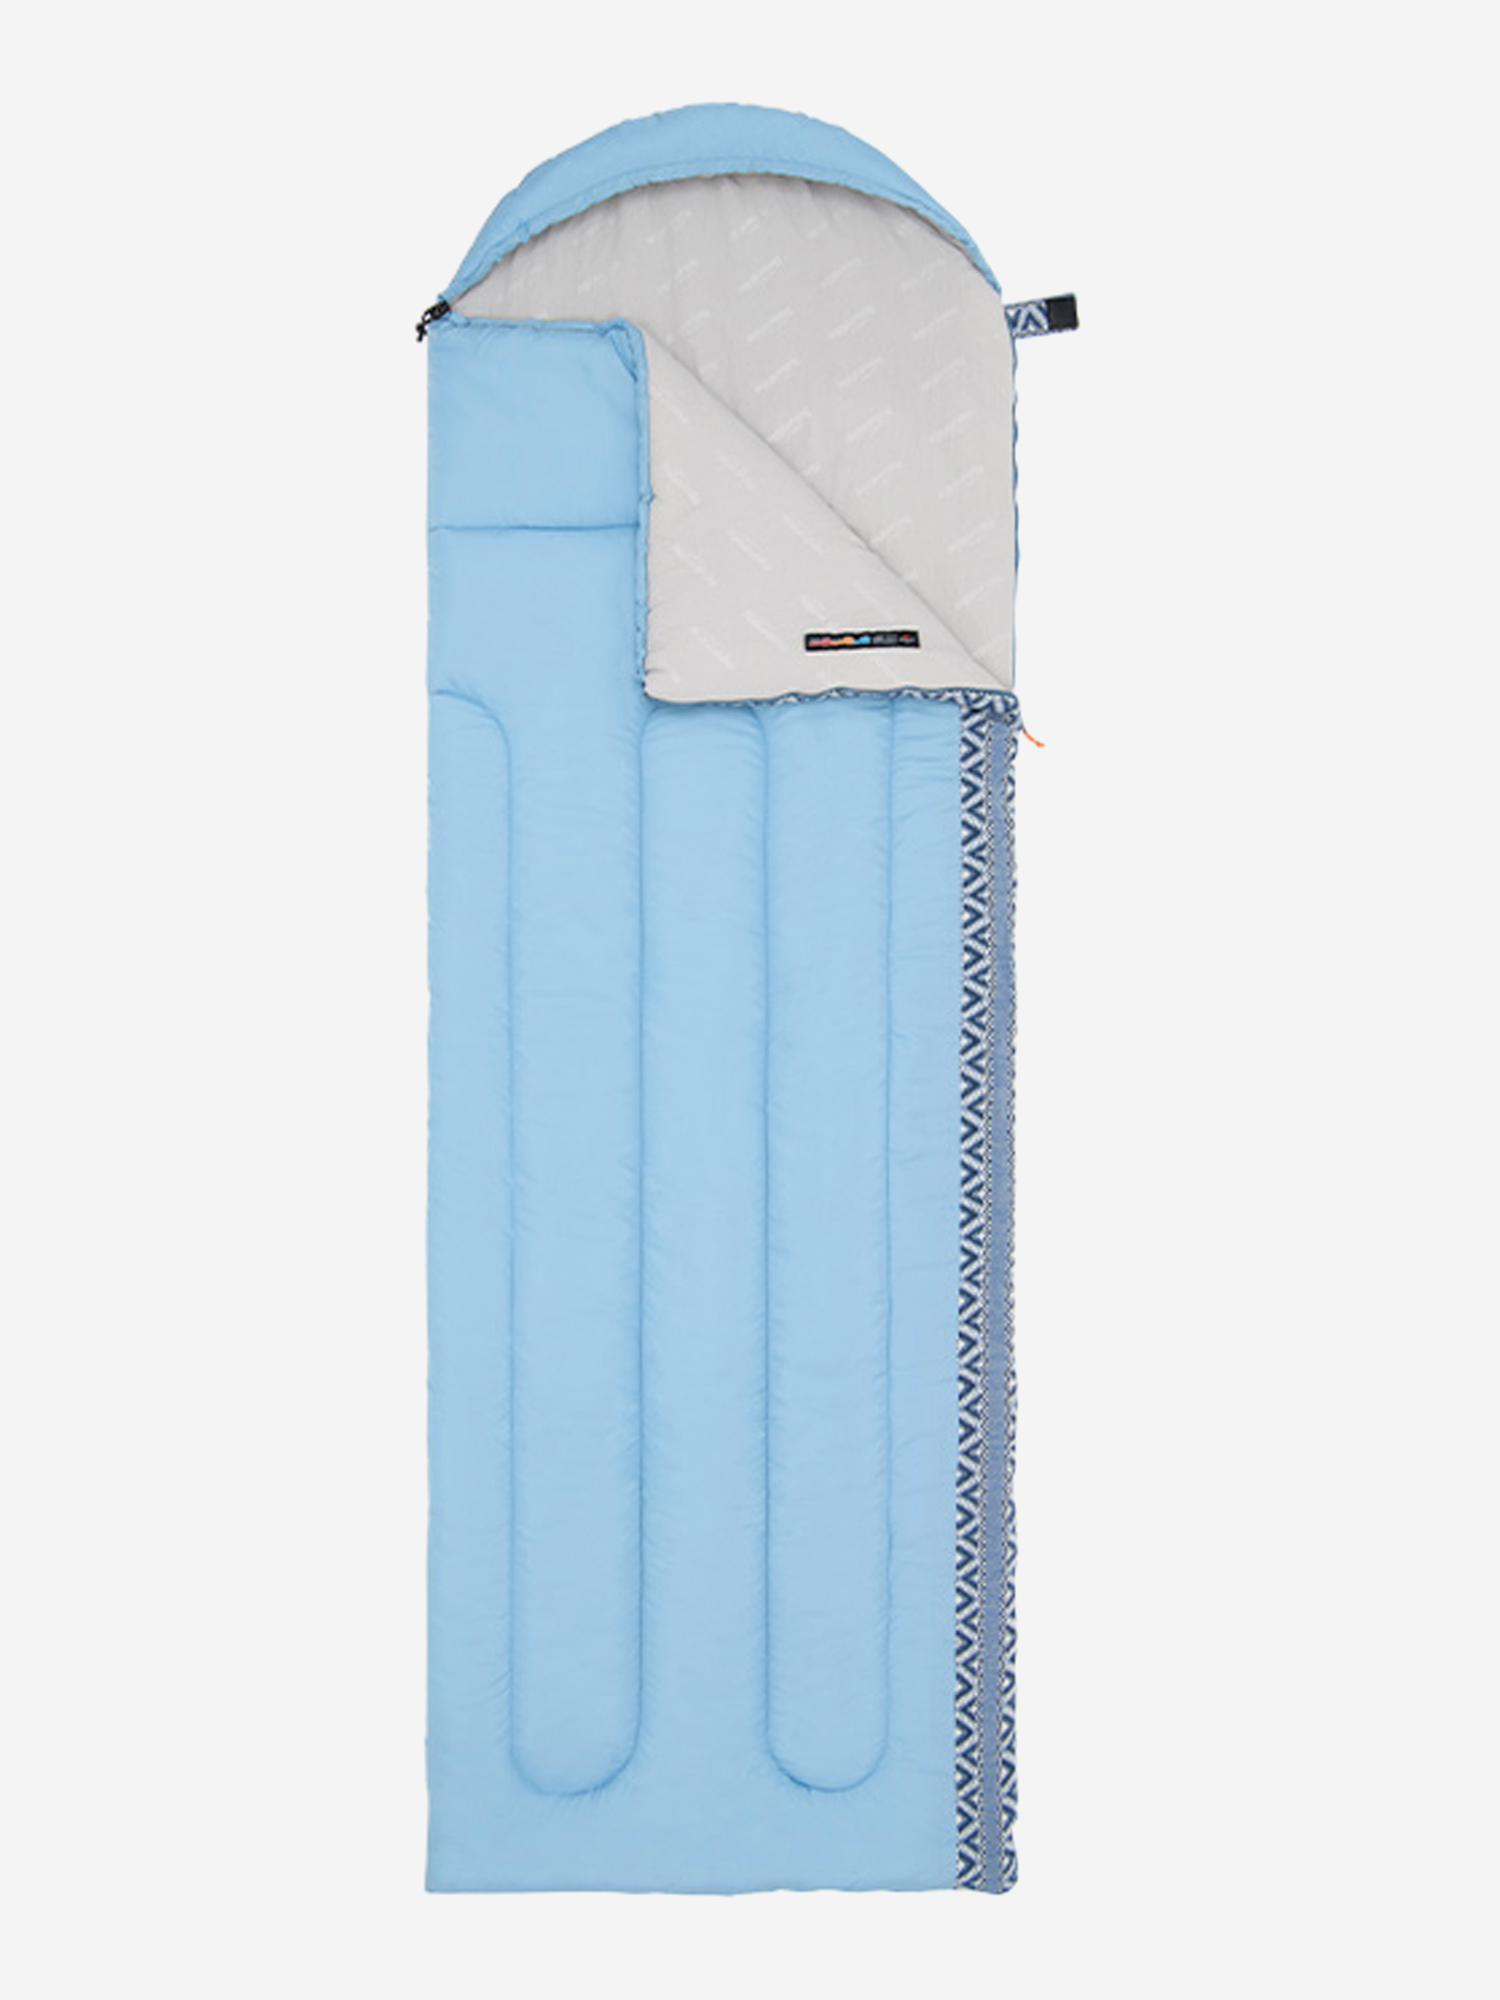 Мешок спальный Naturehike Envelope Down L350, (190+30)х75 см, (правый), (ТК: +3C), голубой, Голубой мешок спальный naturehike envelope down l 250 190 30 x75 см левый тк 9c серый серый